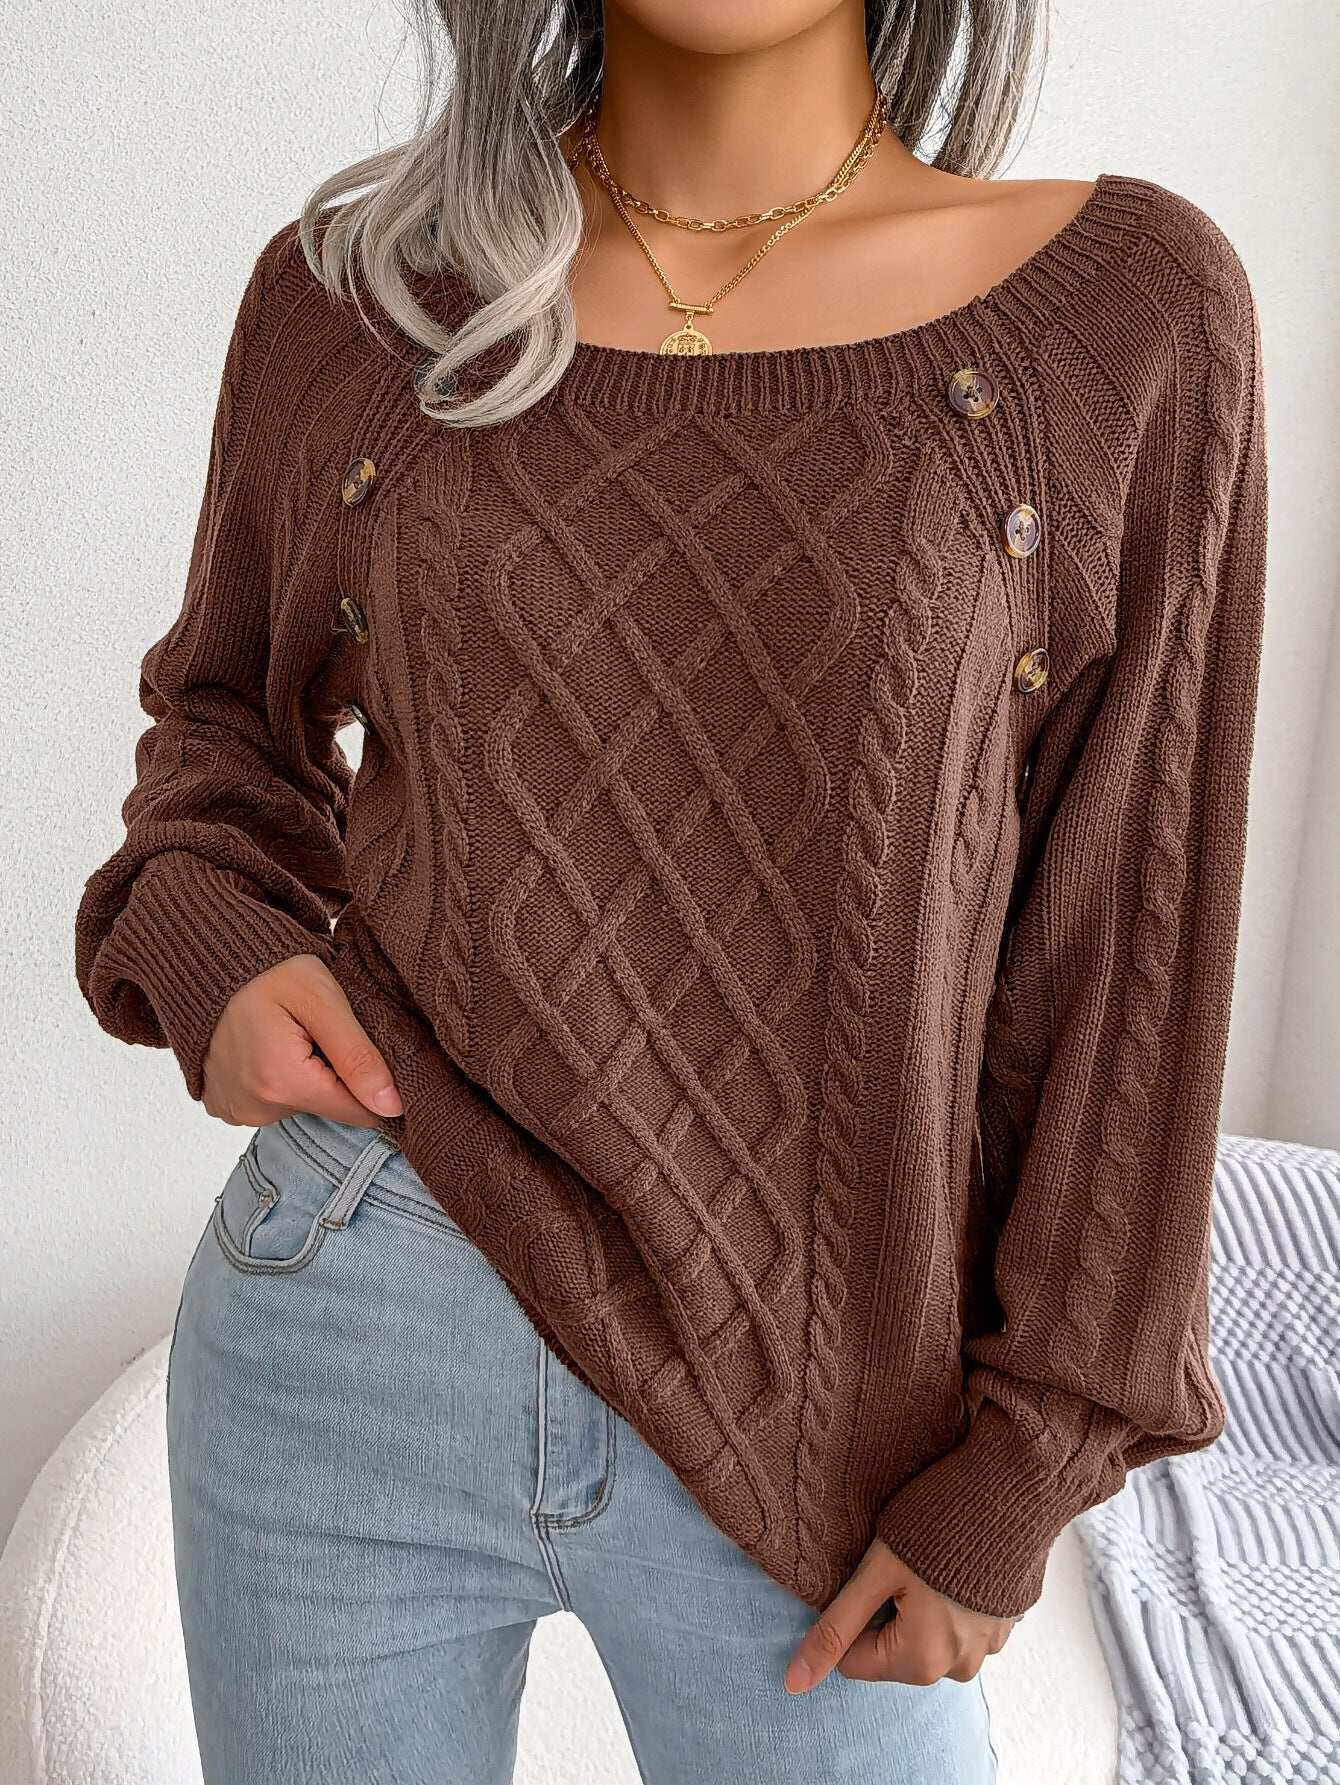 Sweter pulowerowy z kwadratowym dekoltem, zapinany na guziki